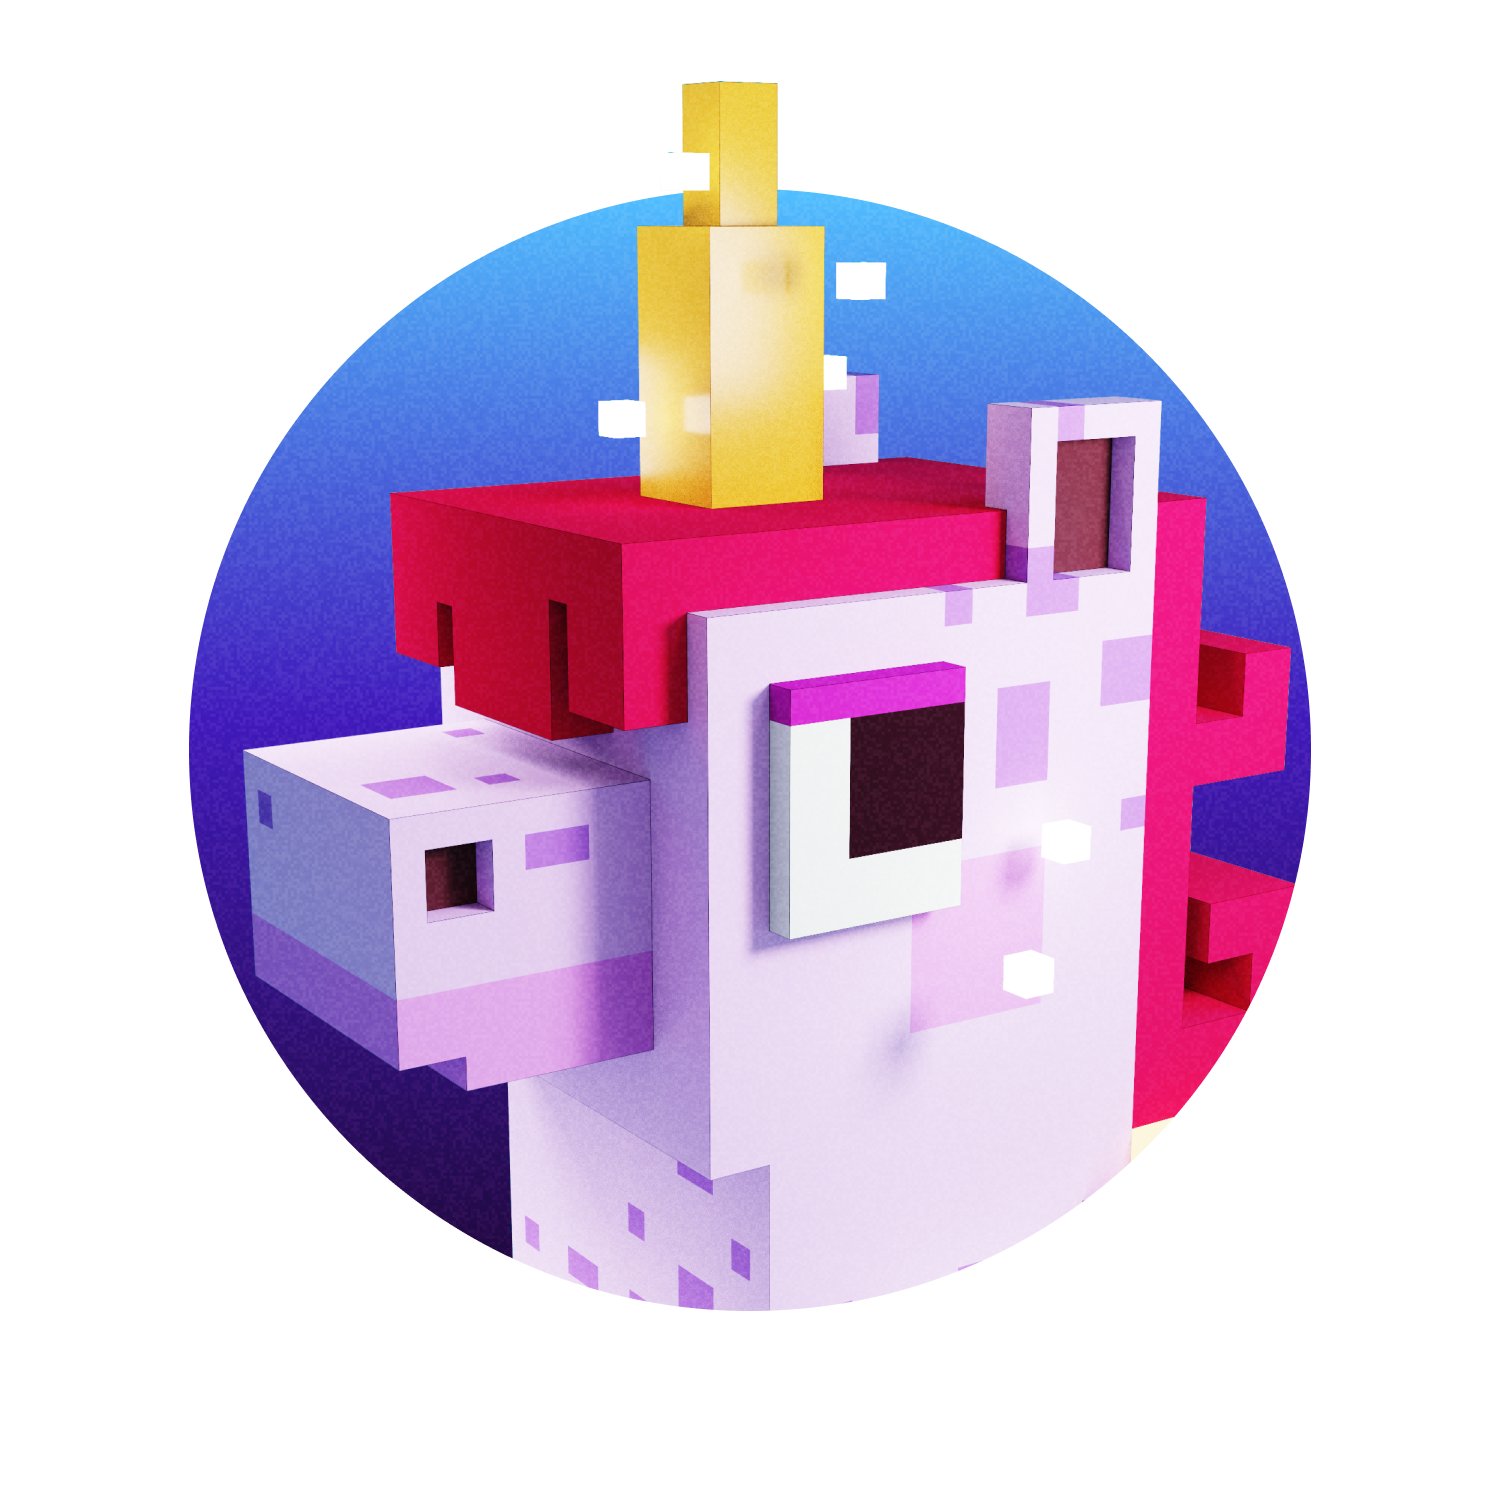 Voxel unicorn avatar sandbox sẽ giới thiệu cho bạn một loại nhân vật đầy màu sắc và đáng yêu nhất từng xuất hiện trên màn hình. Bạn sẽ được tạo ra một nhân vật unicorn độc đáo để khám phá những thế giới kỳ thú và tương tác với cộng đồng game thủ rộng lớn.